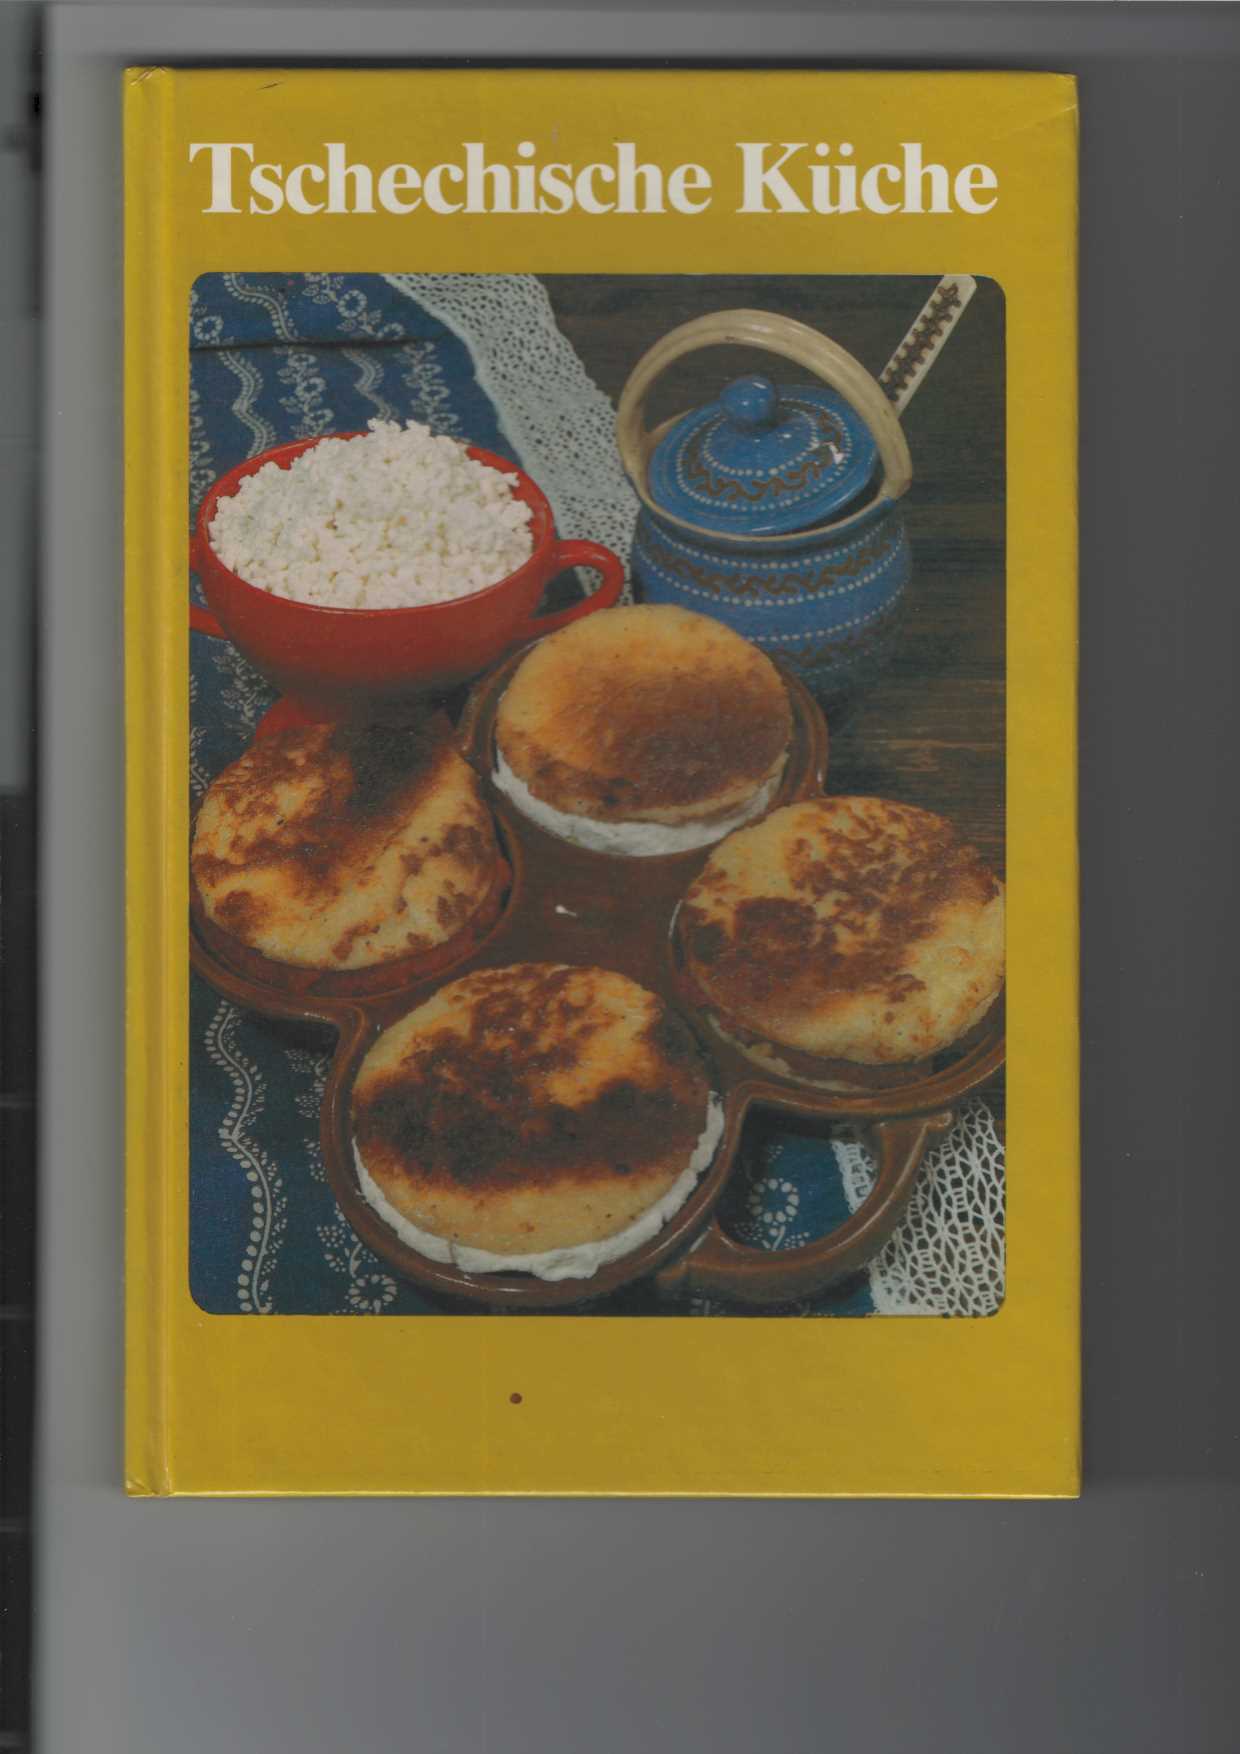 Tschechische Küche. Kochbuch. Mit Bildtafeln, teils farbig. - Brízová, Joza und Maryna Klimentová